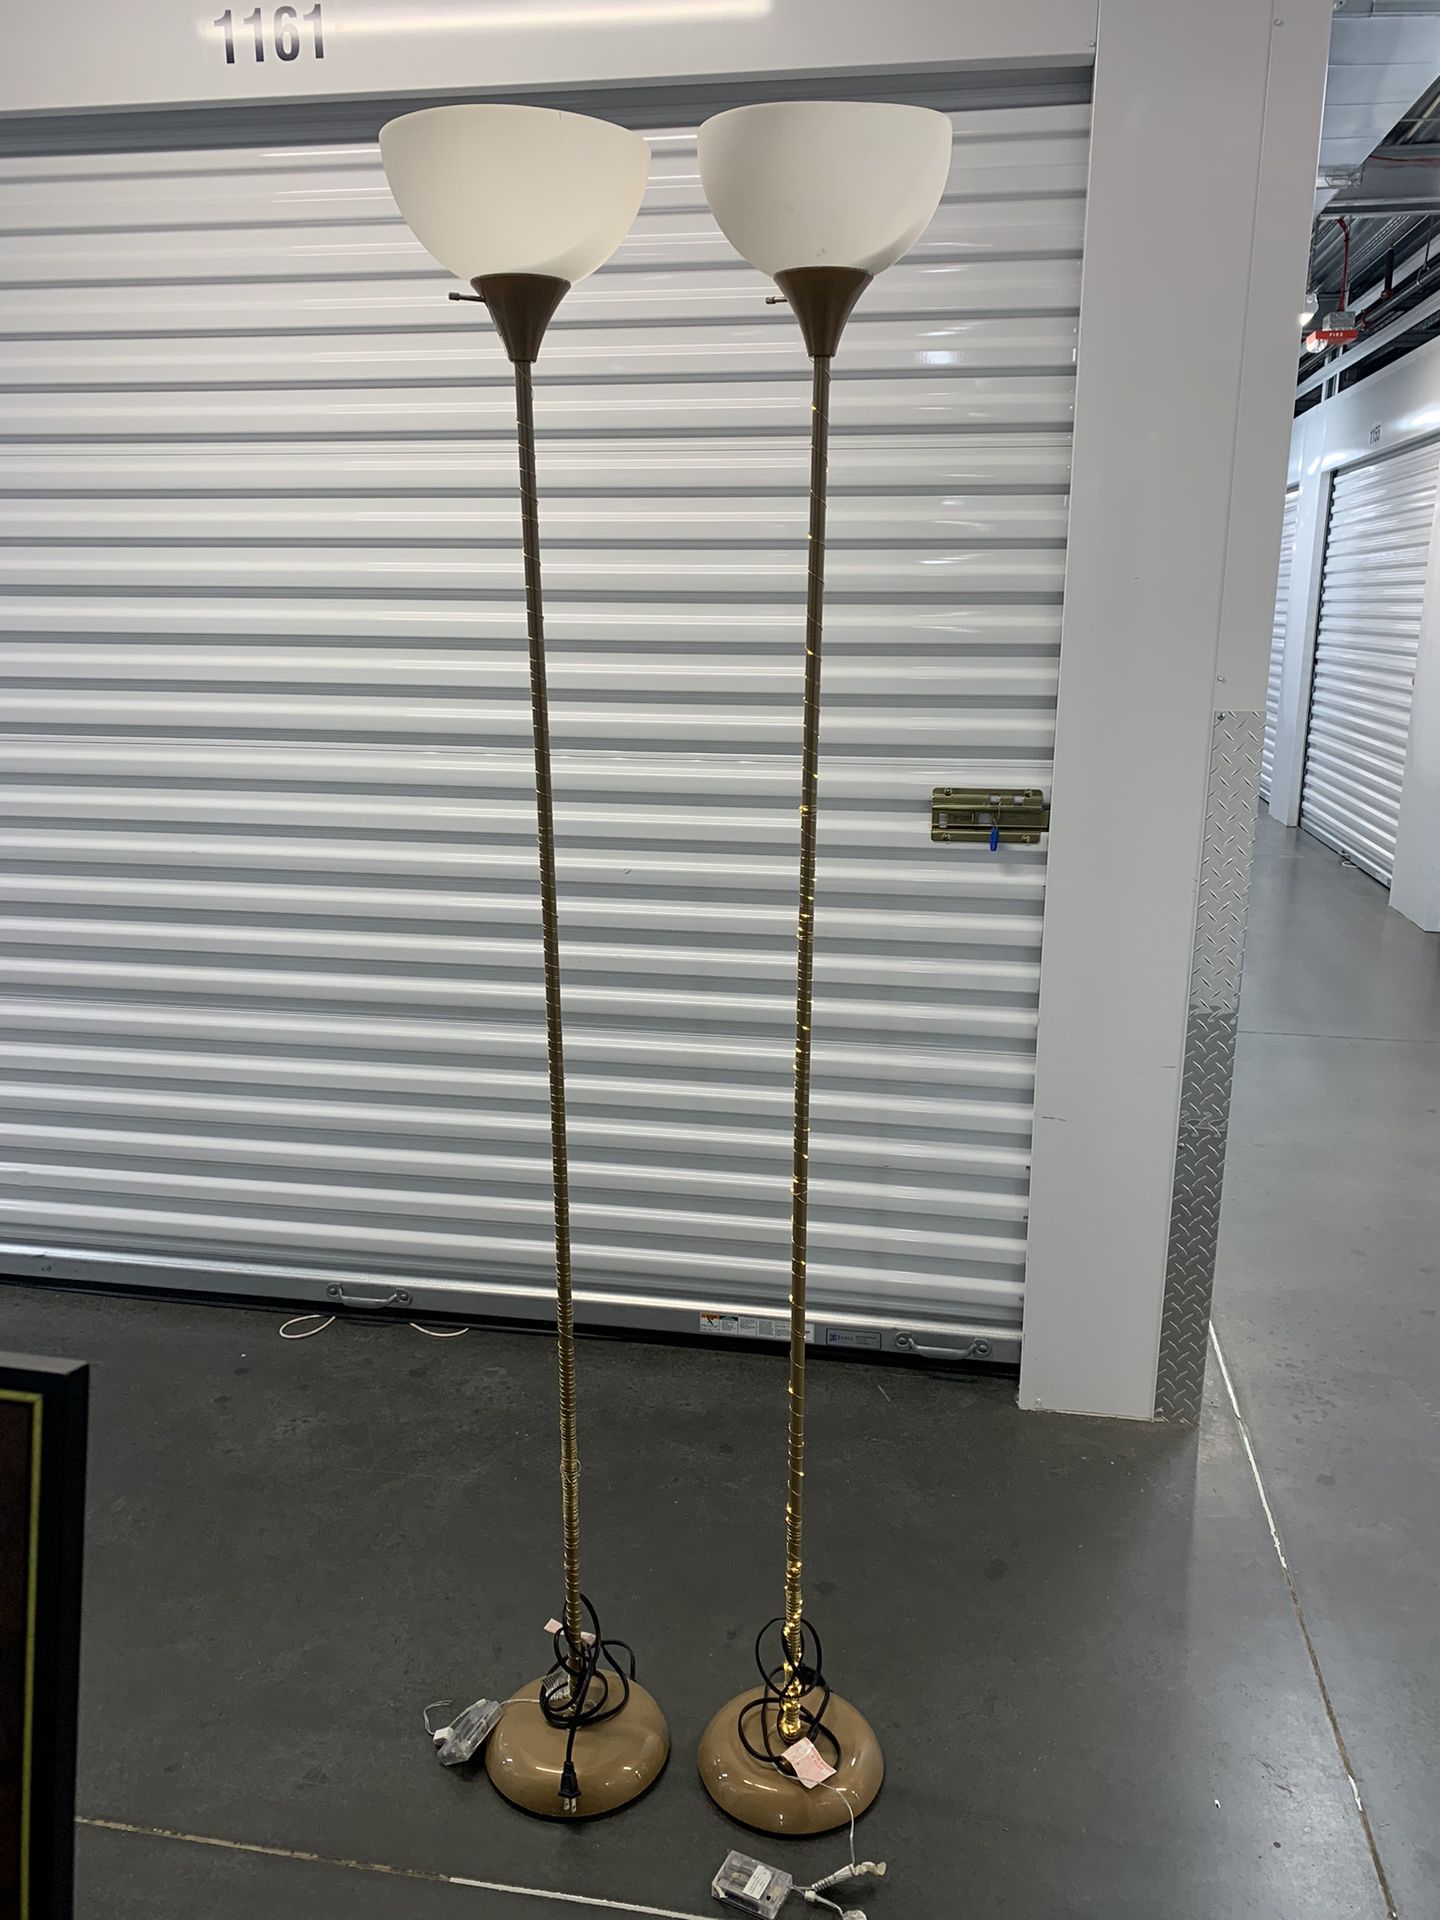 2 Golden Lamps 